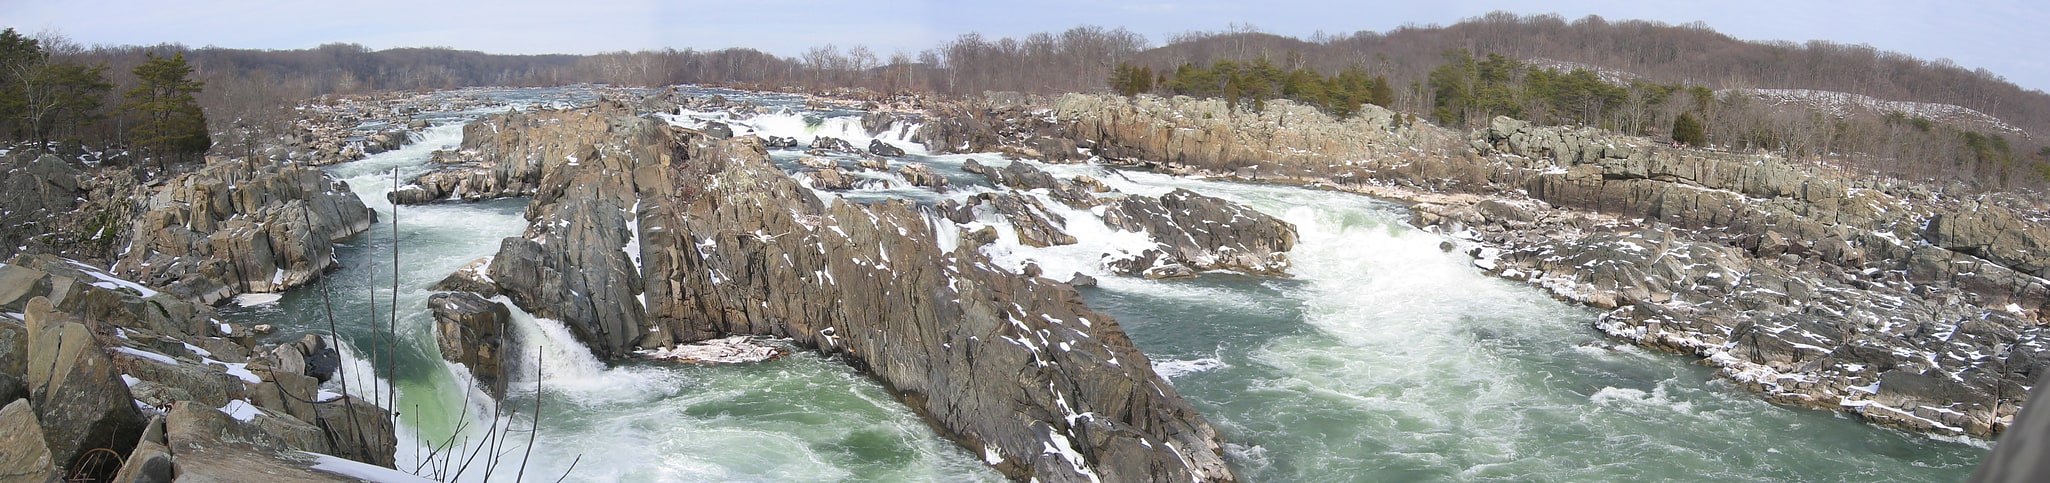 Great Falls, Estados Unidos